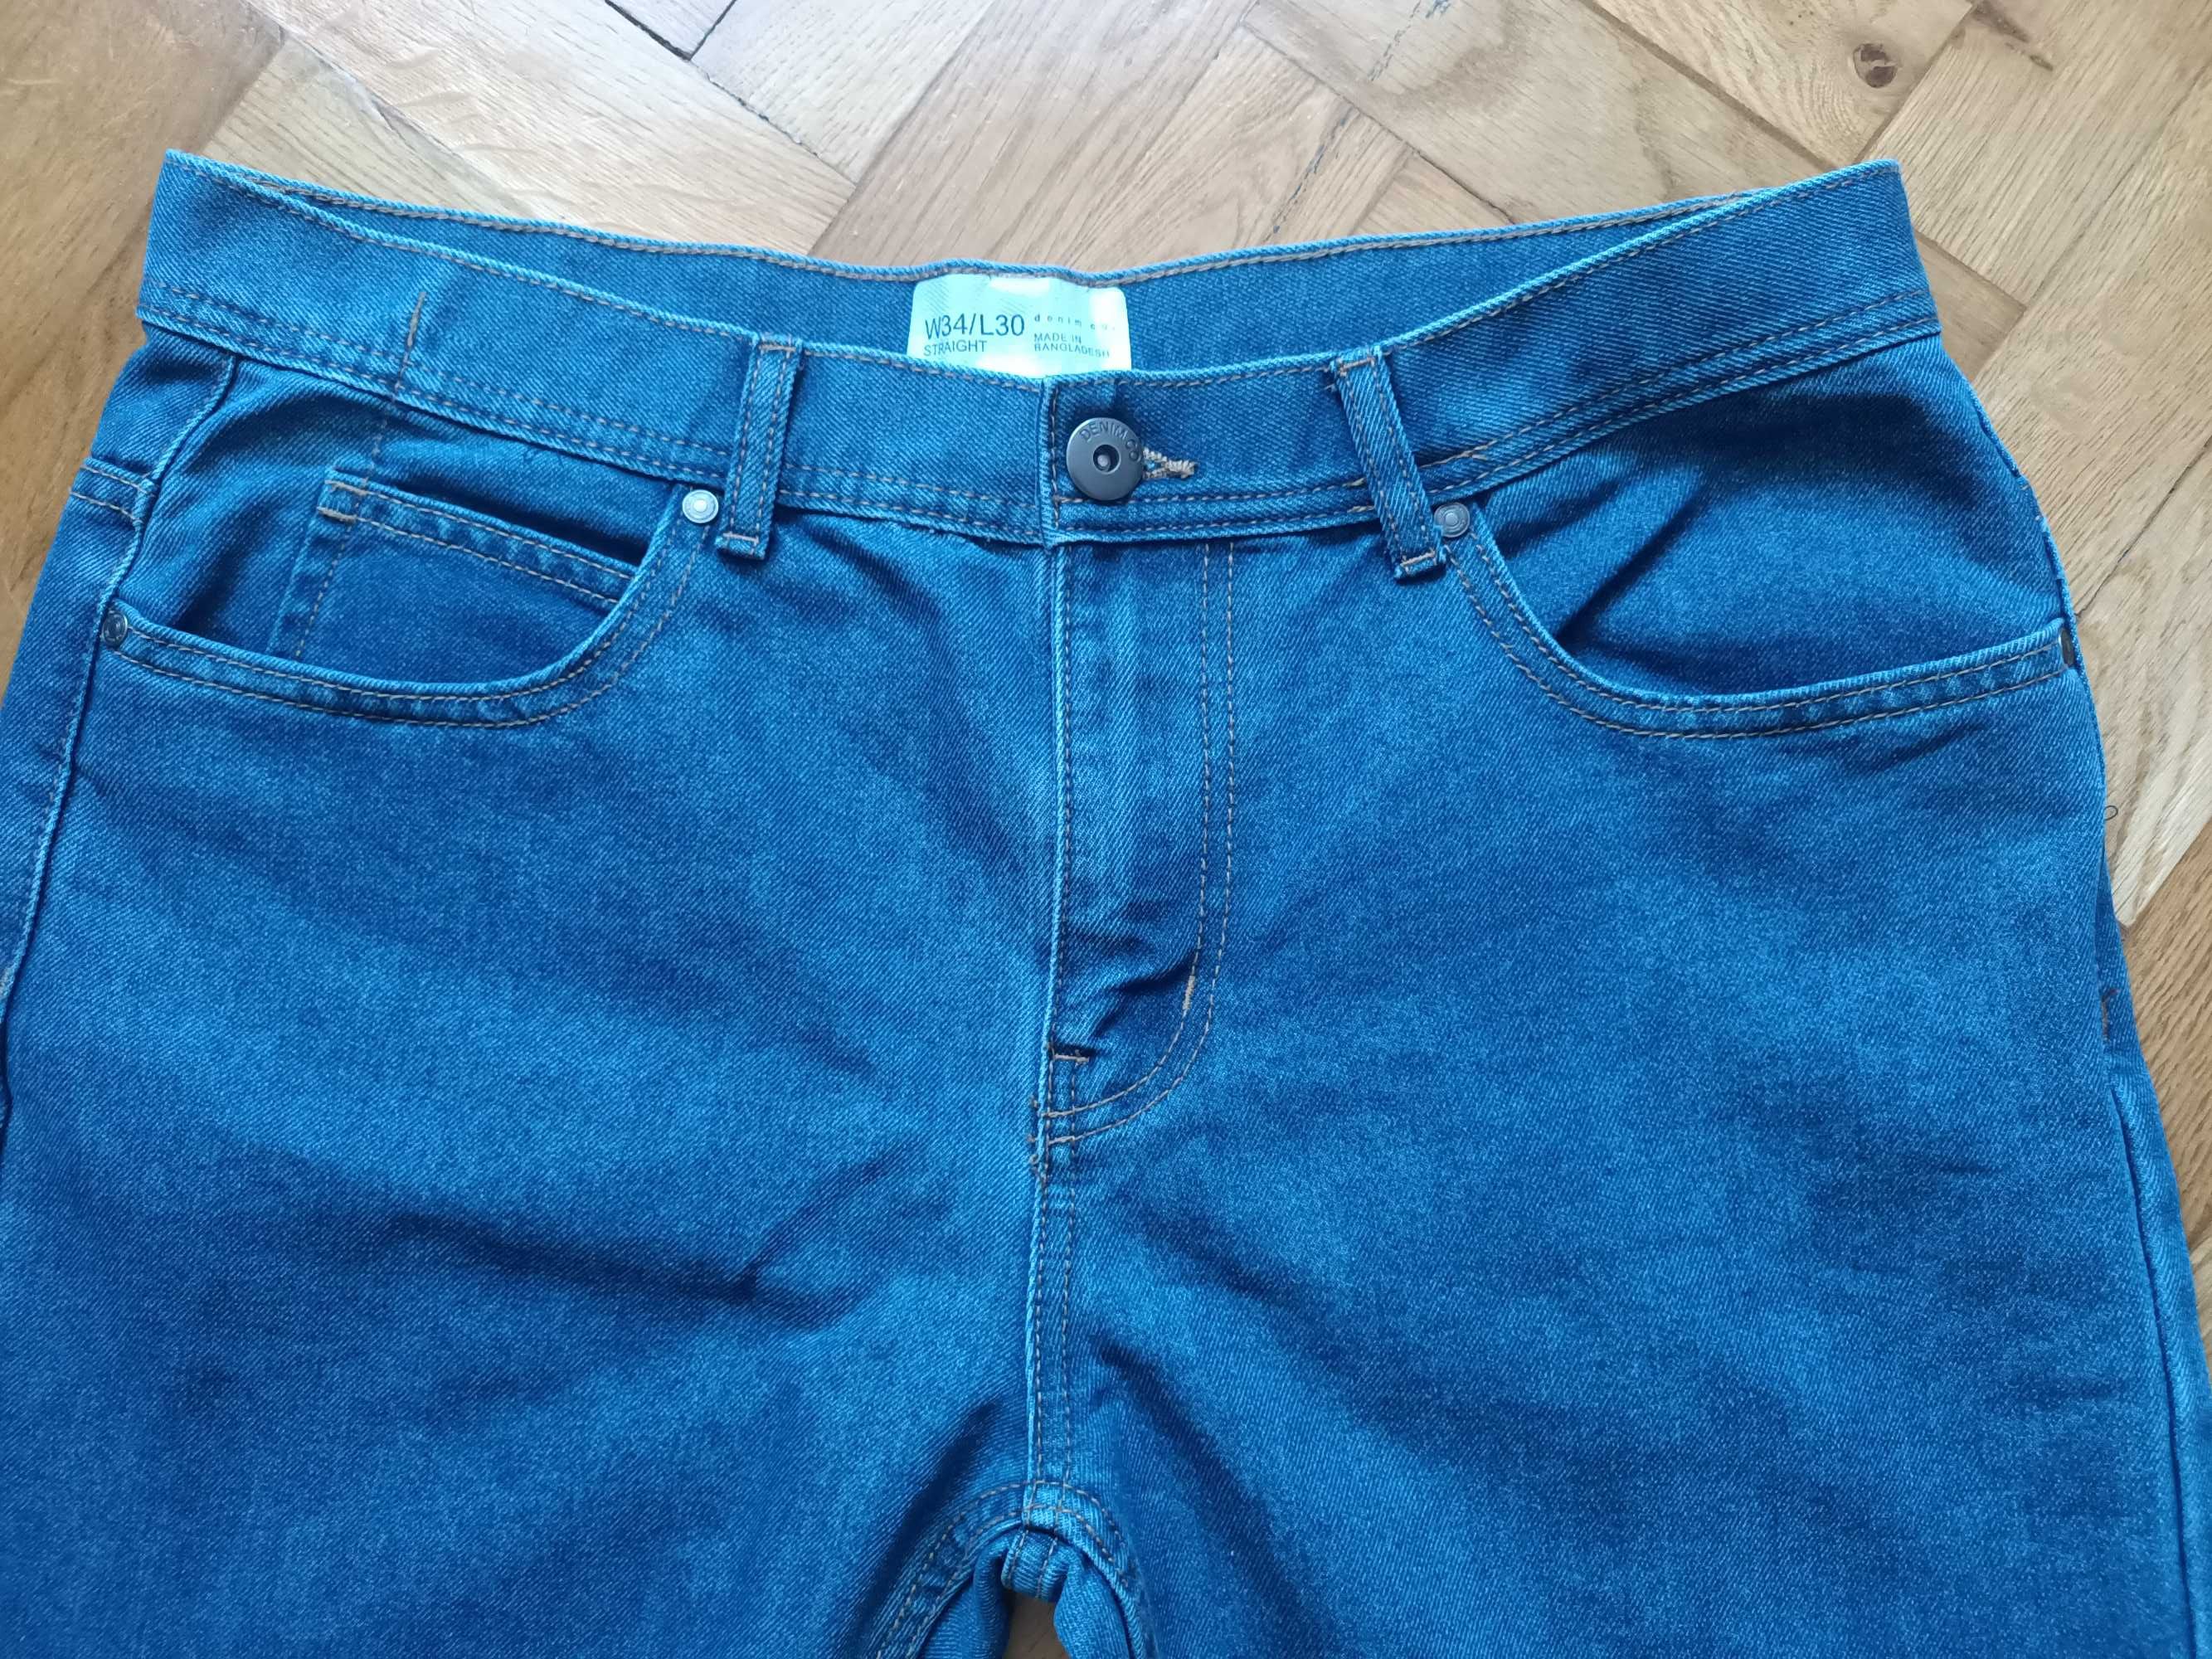 Spodnie męskie dżinsy Denim rozmiar L